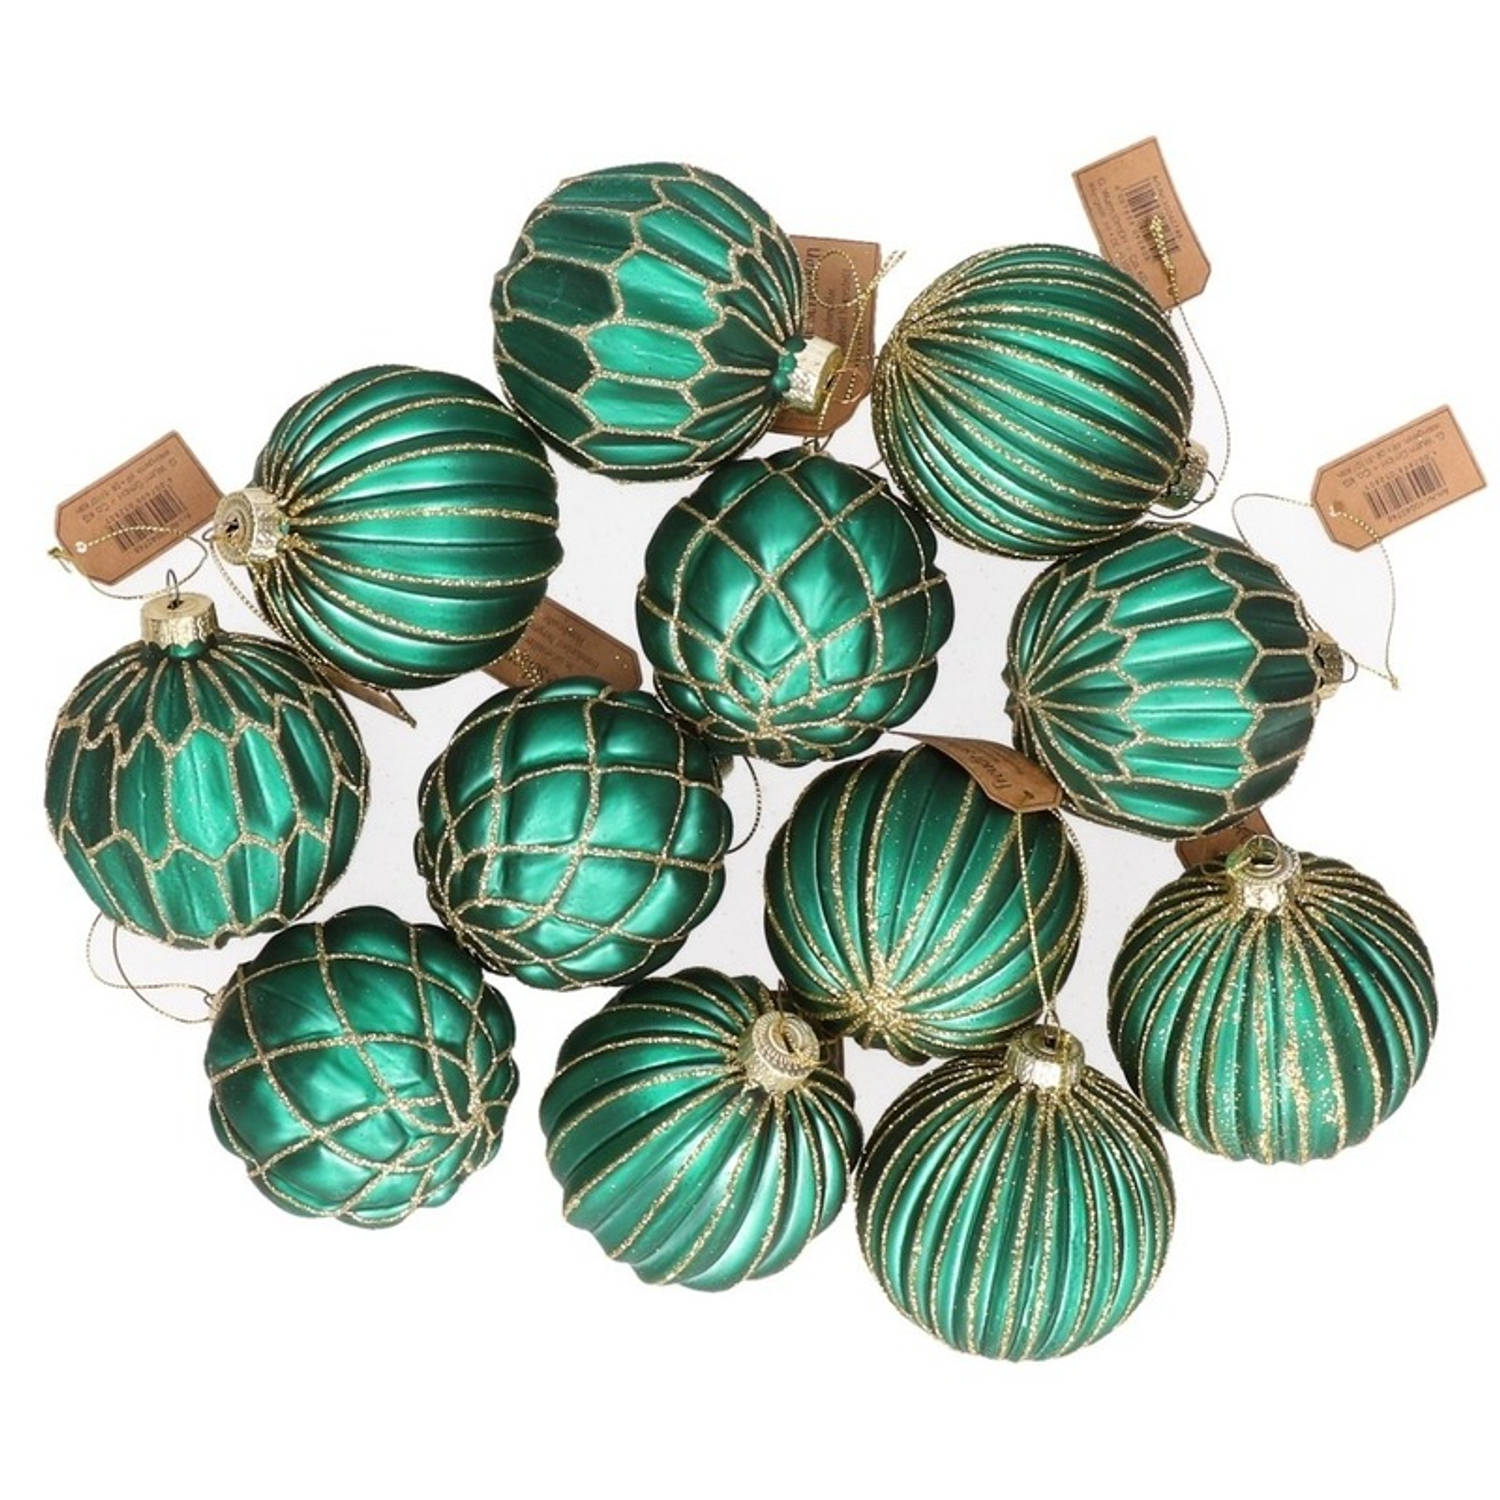 12x Groene Glazen Kerstballen Met Zilveren Decoratie 8 Cm Kerstboom Versiering-decoratie Kerstballen